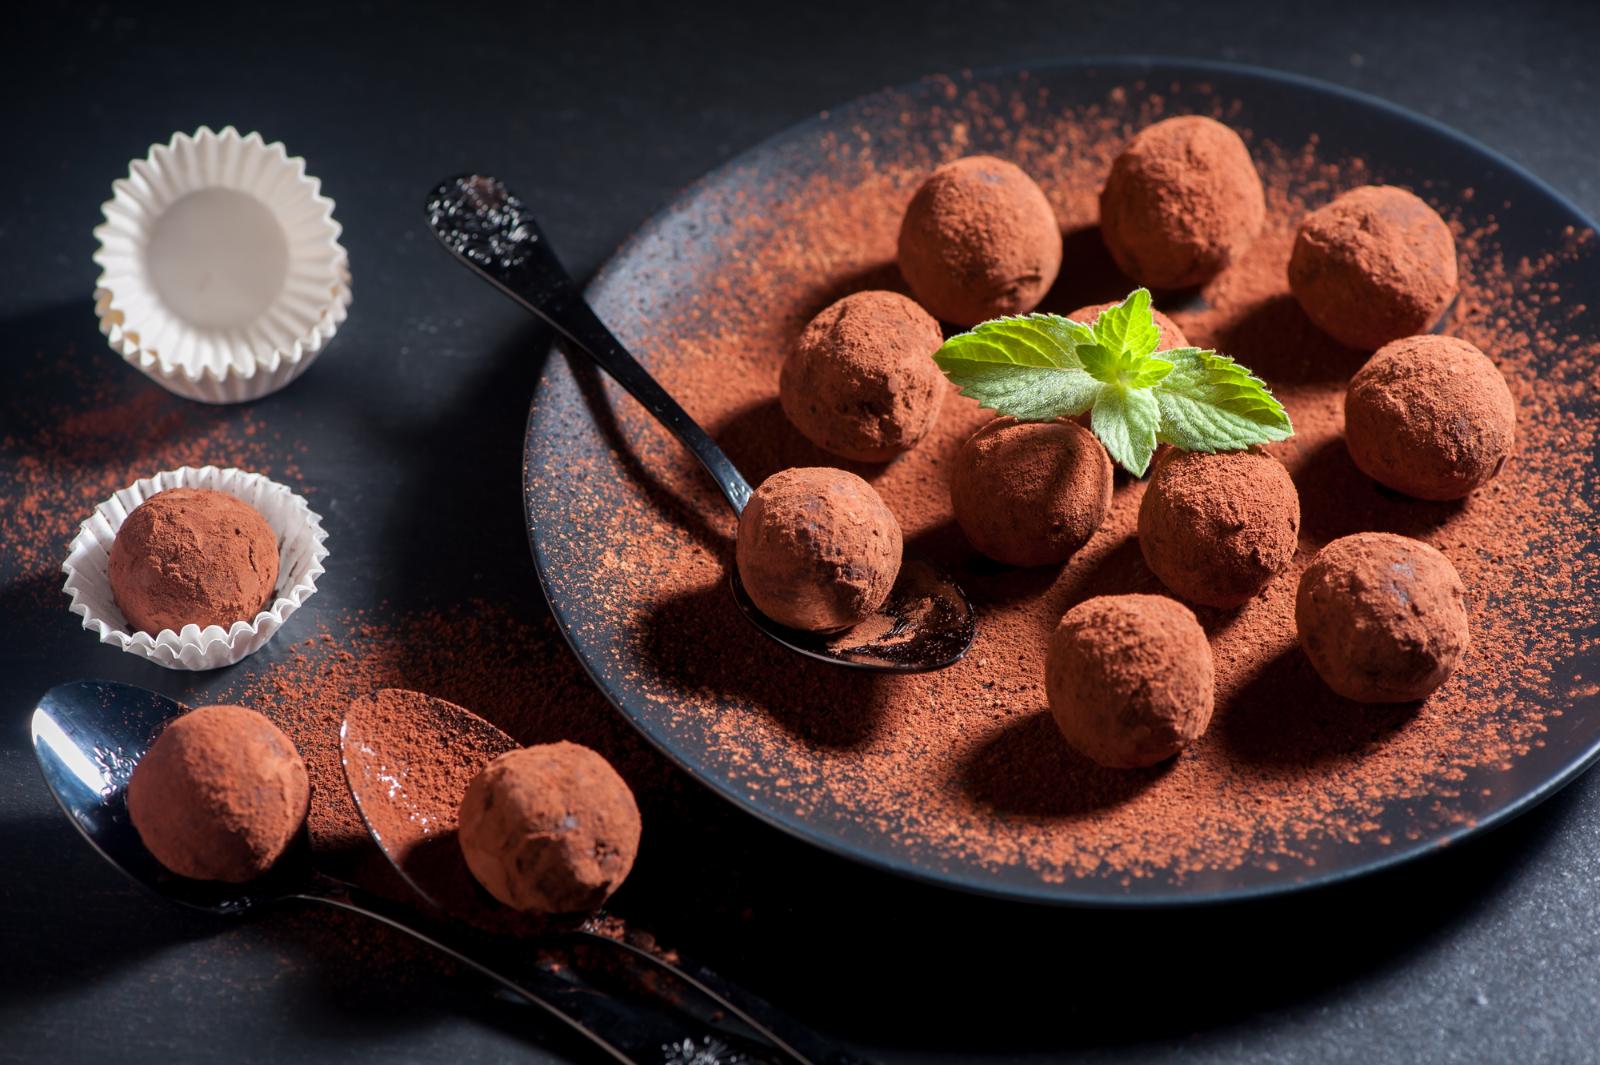 Шоколадные трюфели. Автор рецепта: instagram.com/vupechka.nyam_ka/